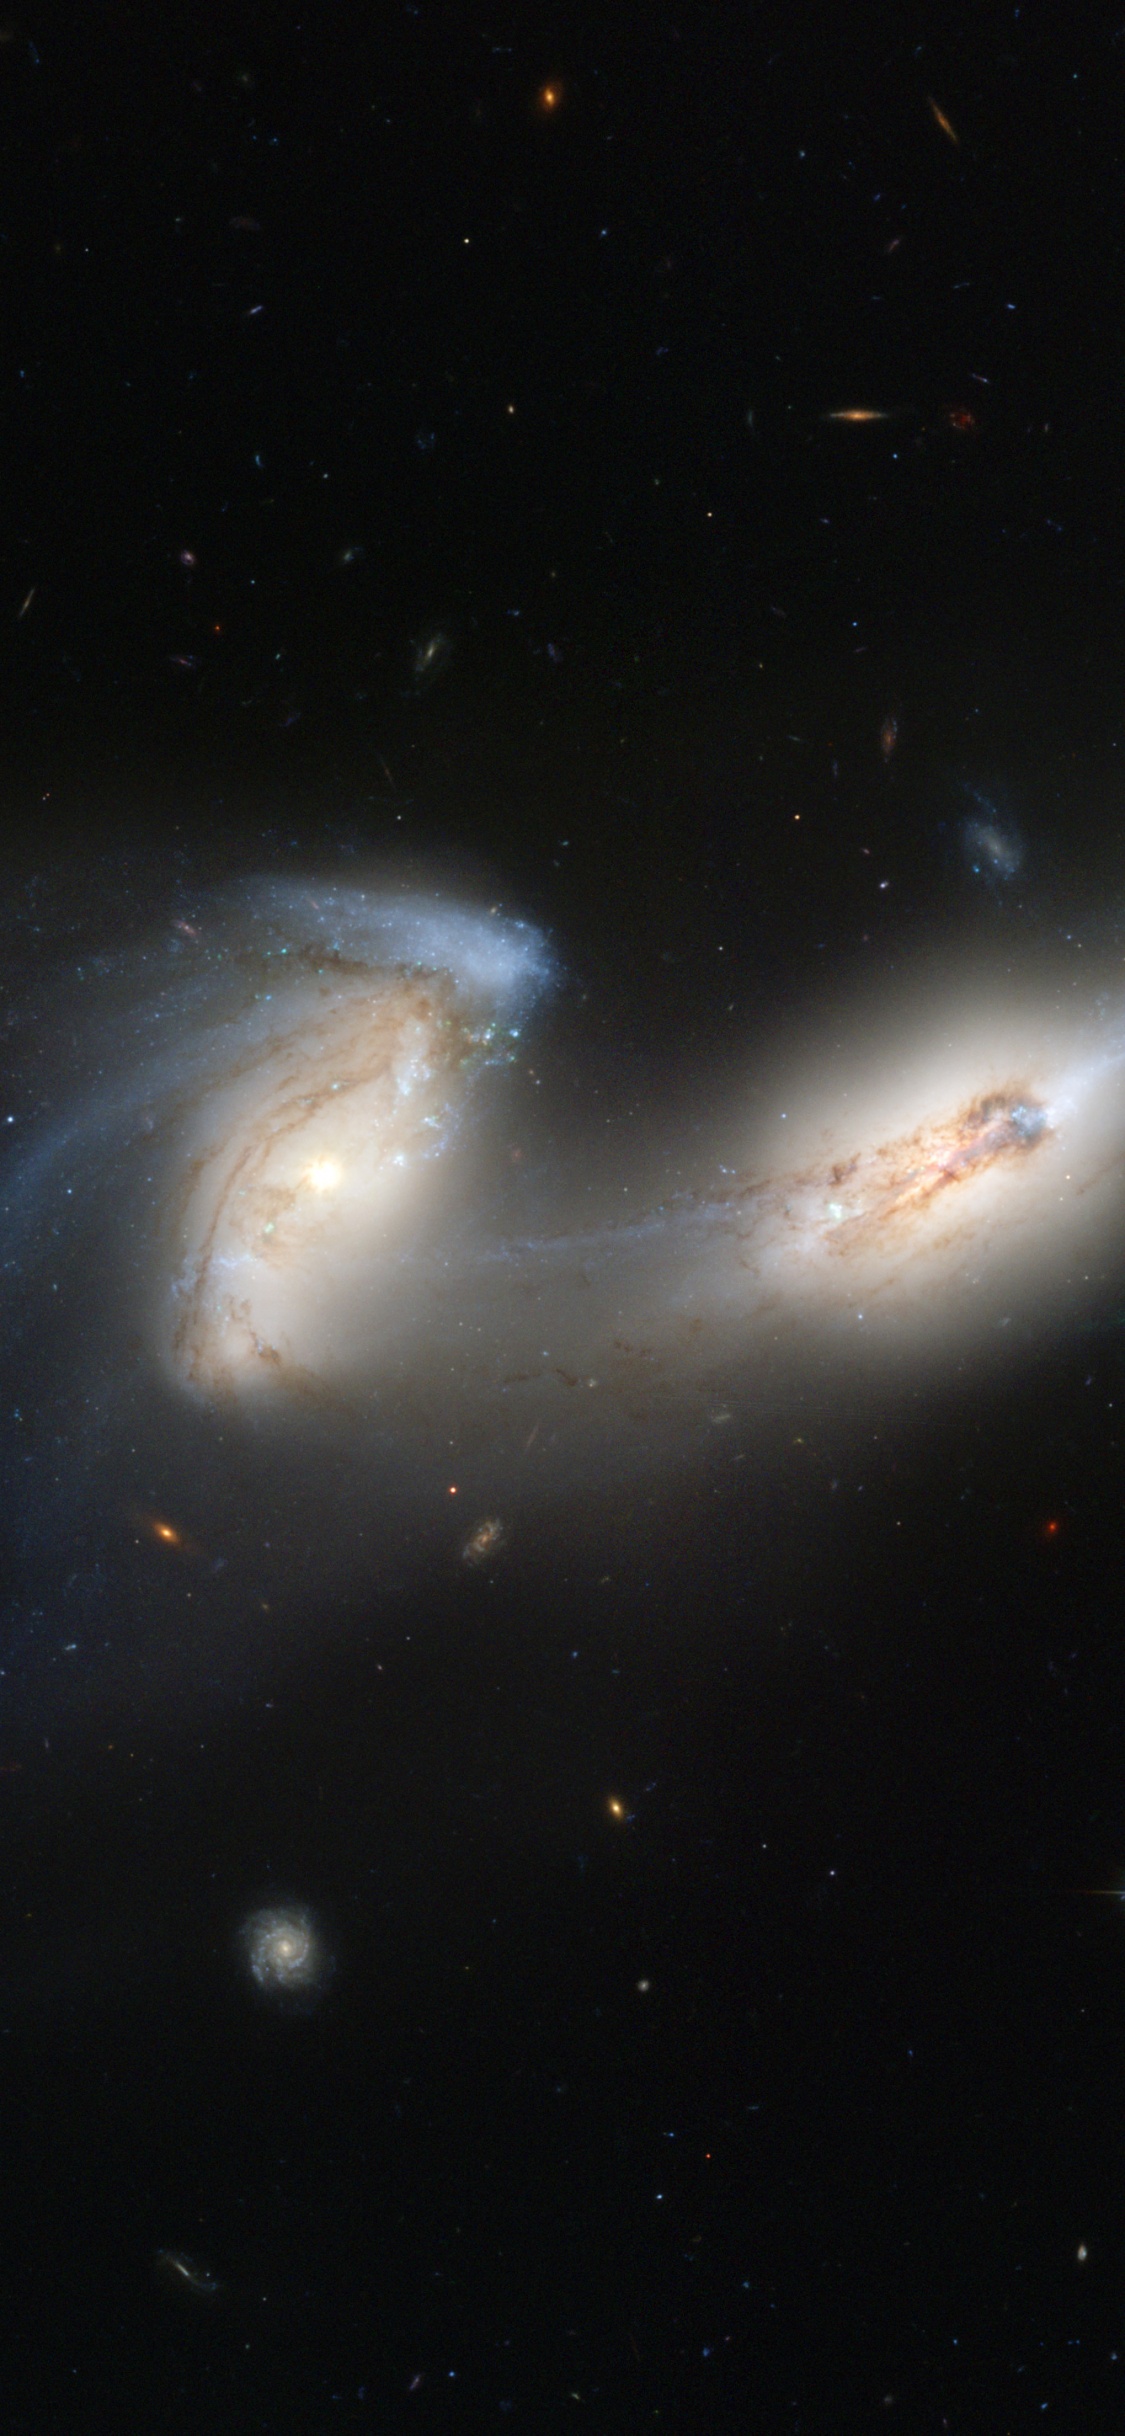 Abbildung Der Weißen Und Blauen Galaxie. Wallpaper in 1125x2436 Resolution